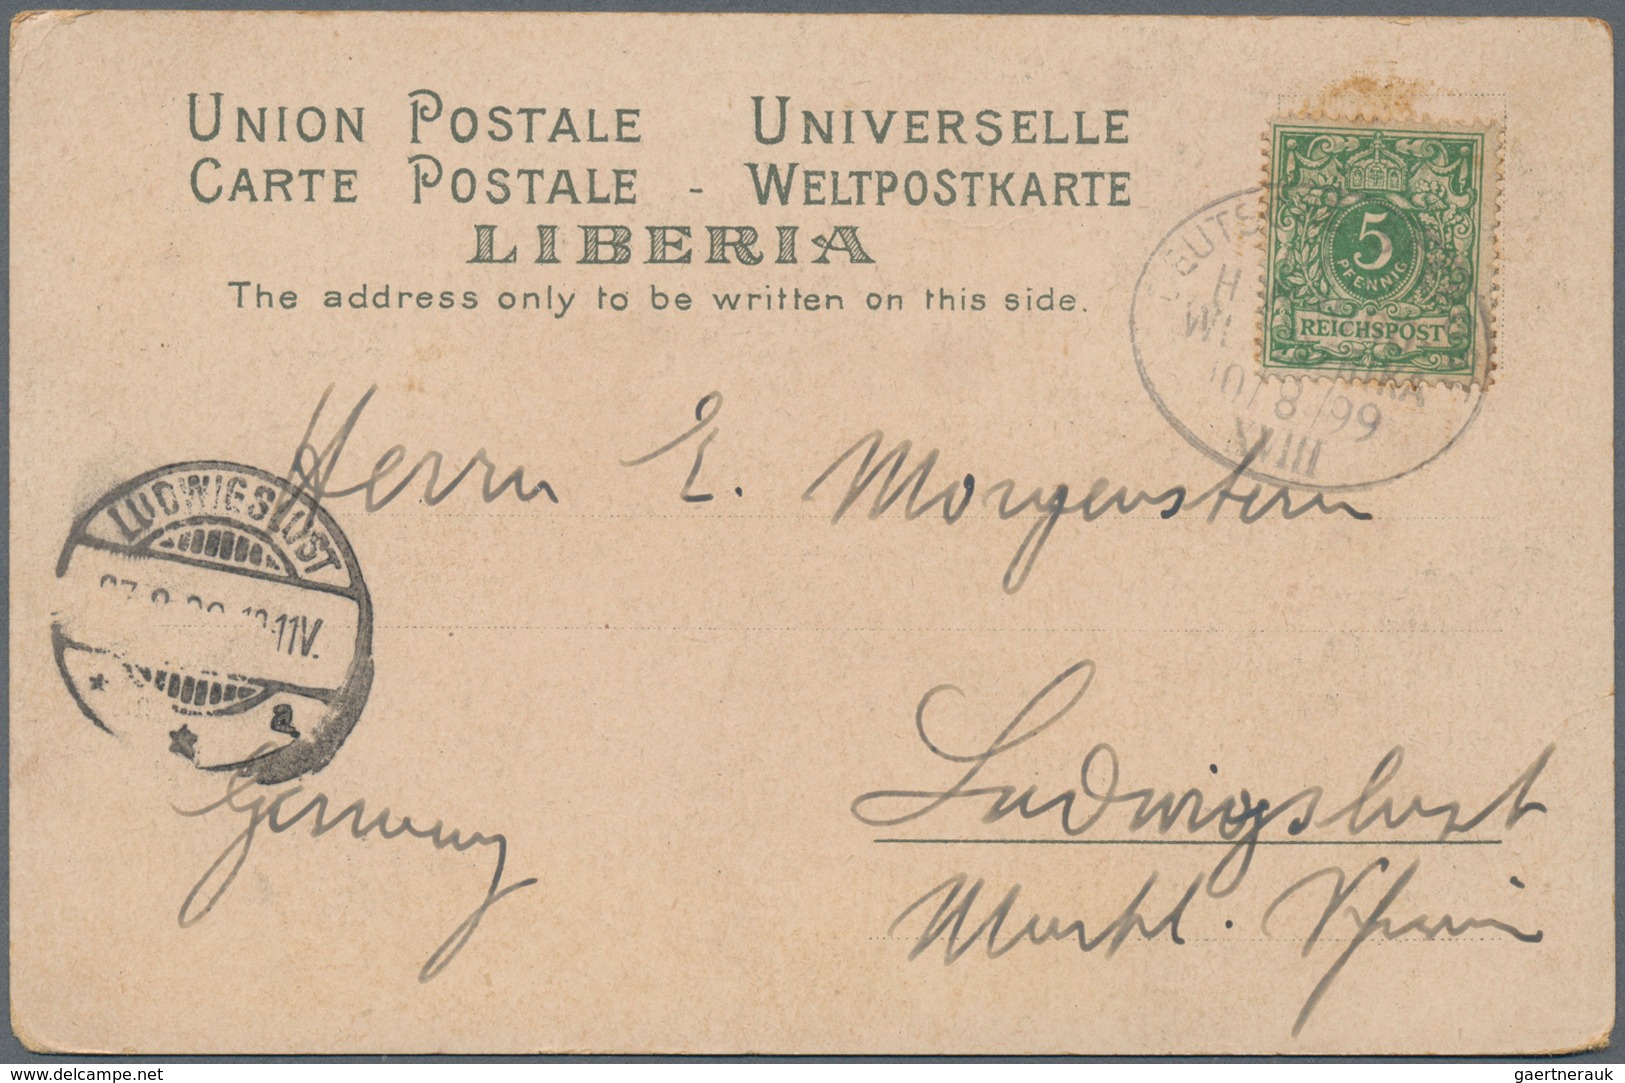 Schiffspost Deutschland: 1898/99, "DEUTSCHE SEEPOST HAMBURG-WESTAFRIKA" oval ship postmarks on four